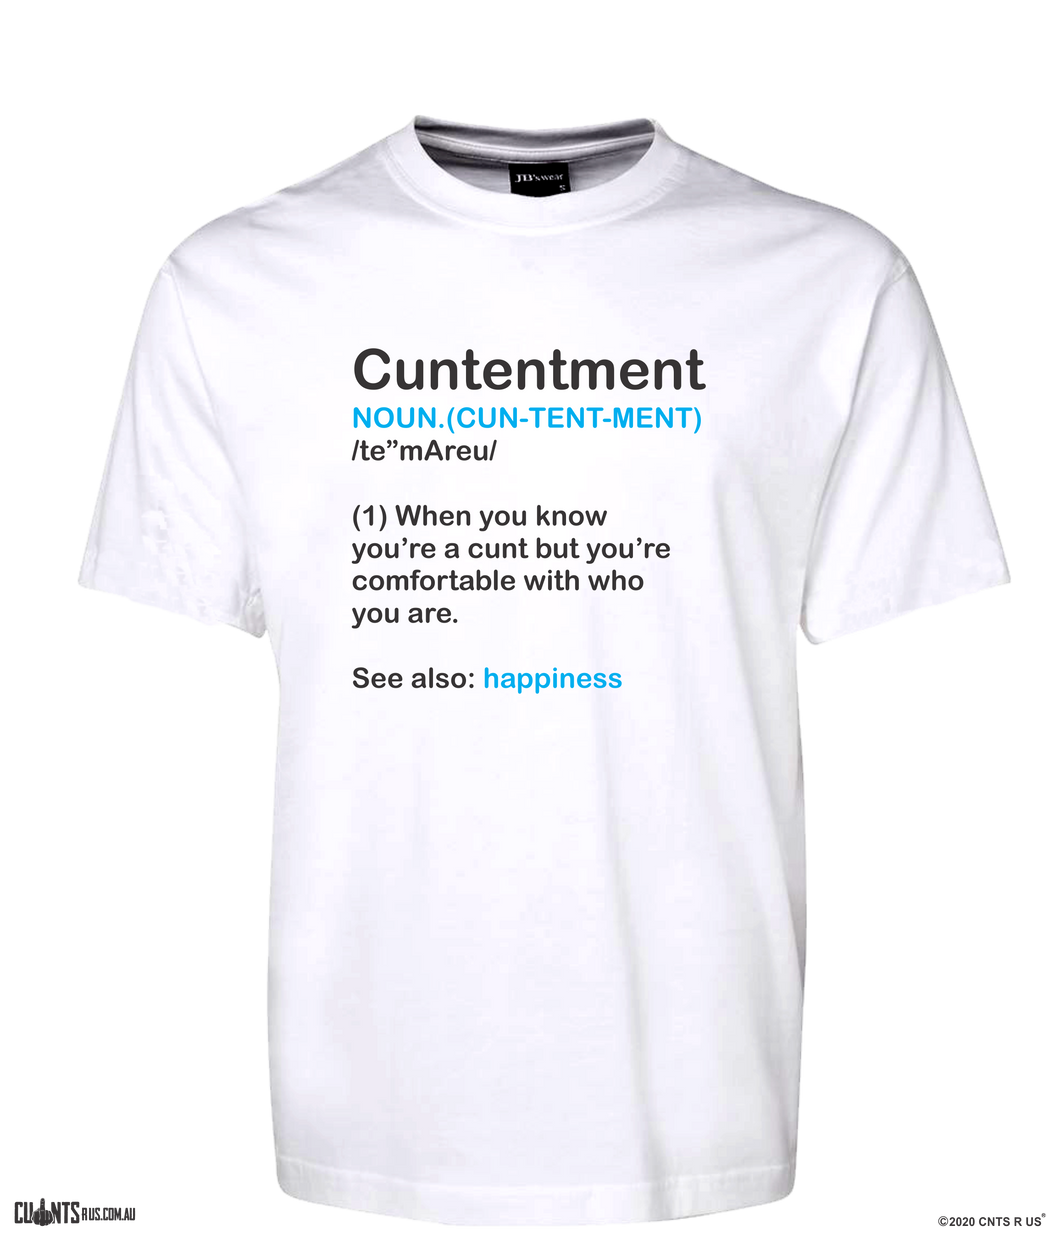 Cuntentment Definition Tee T-Shirt CRU01-1HT-24031